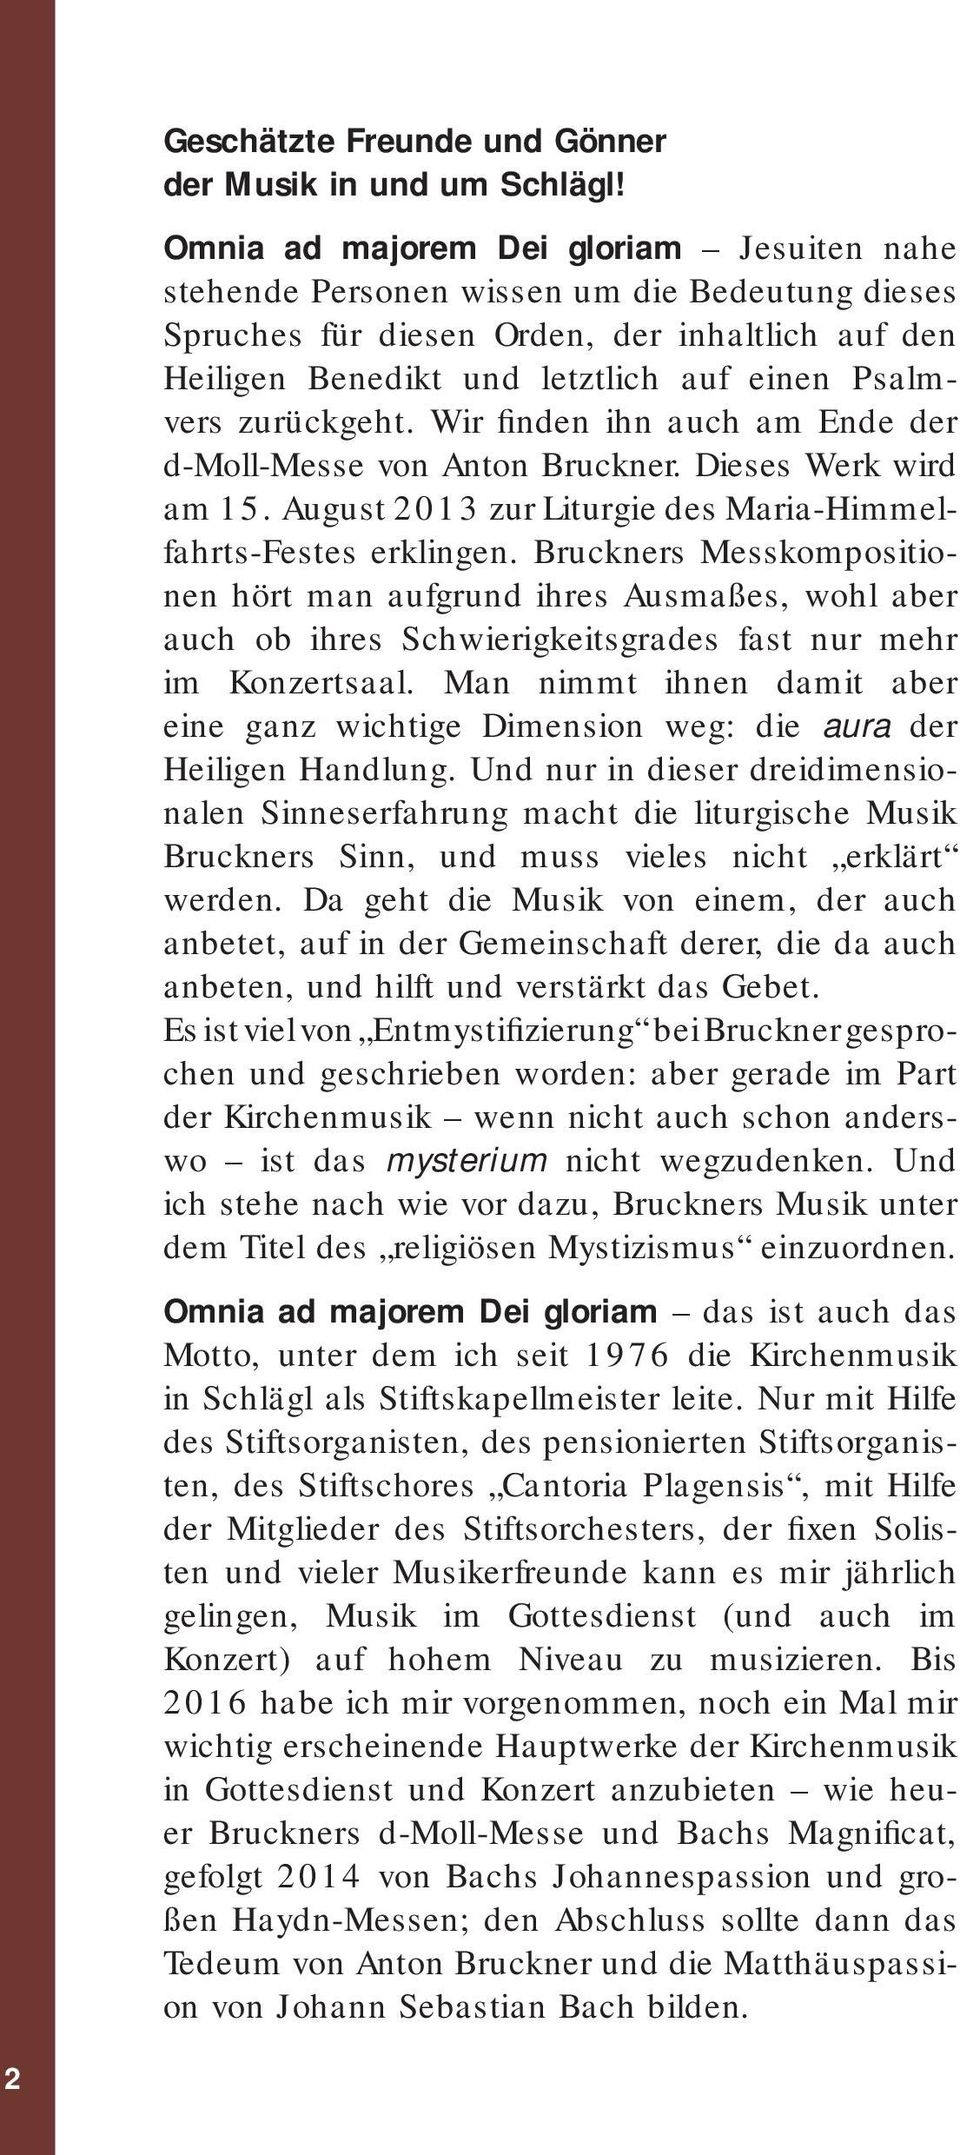 zurückgeht. Wir finden ihn auch am Ende der d-moll-messe von Anton Bruckner. Dieses Werk wird am 15. August 2013 zur Liturgie des Maria-Himmelfahrts-Festes erklingen.